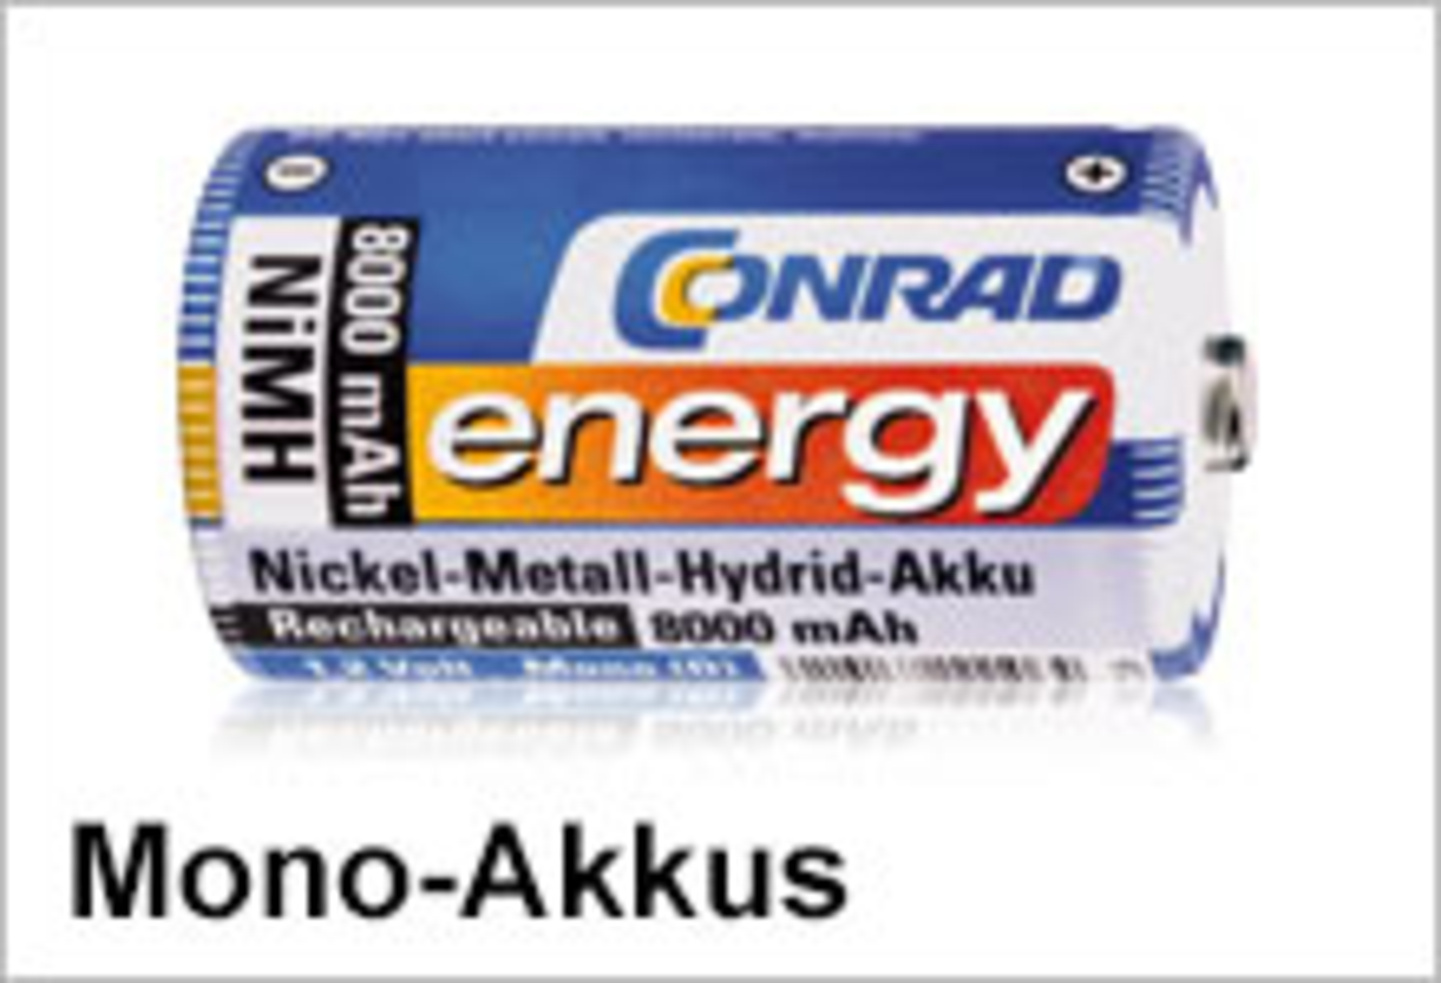 Conrad Energy Mono-Akkus